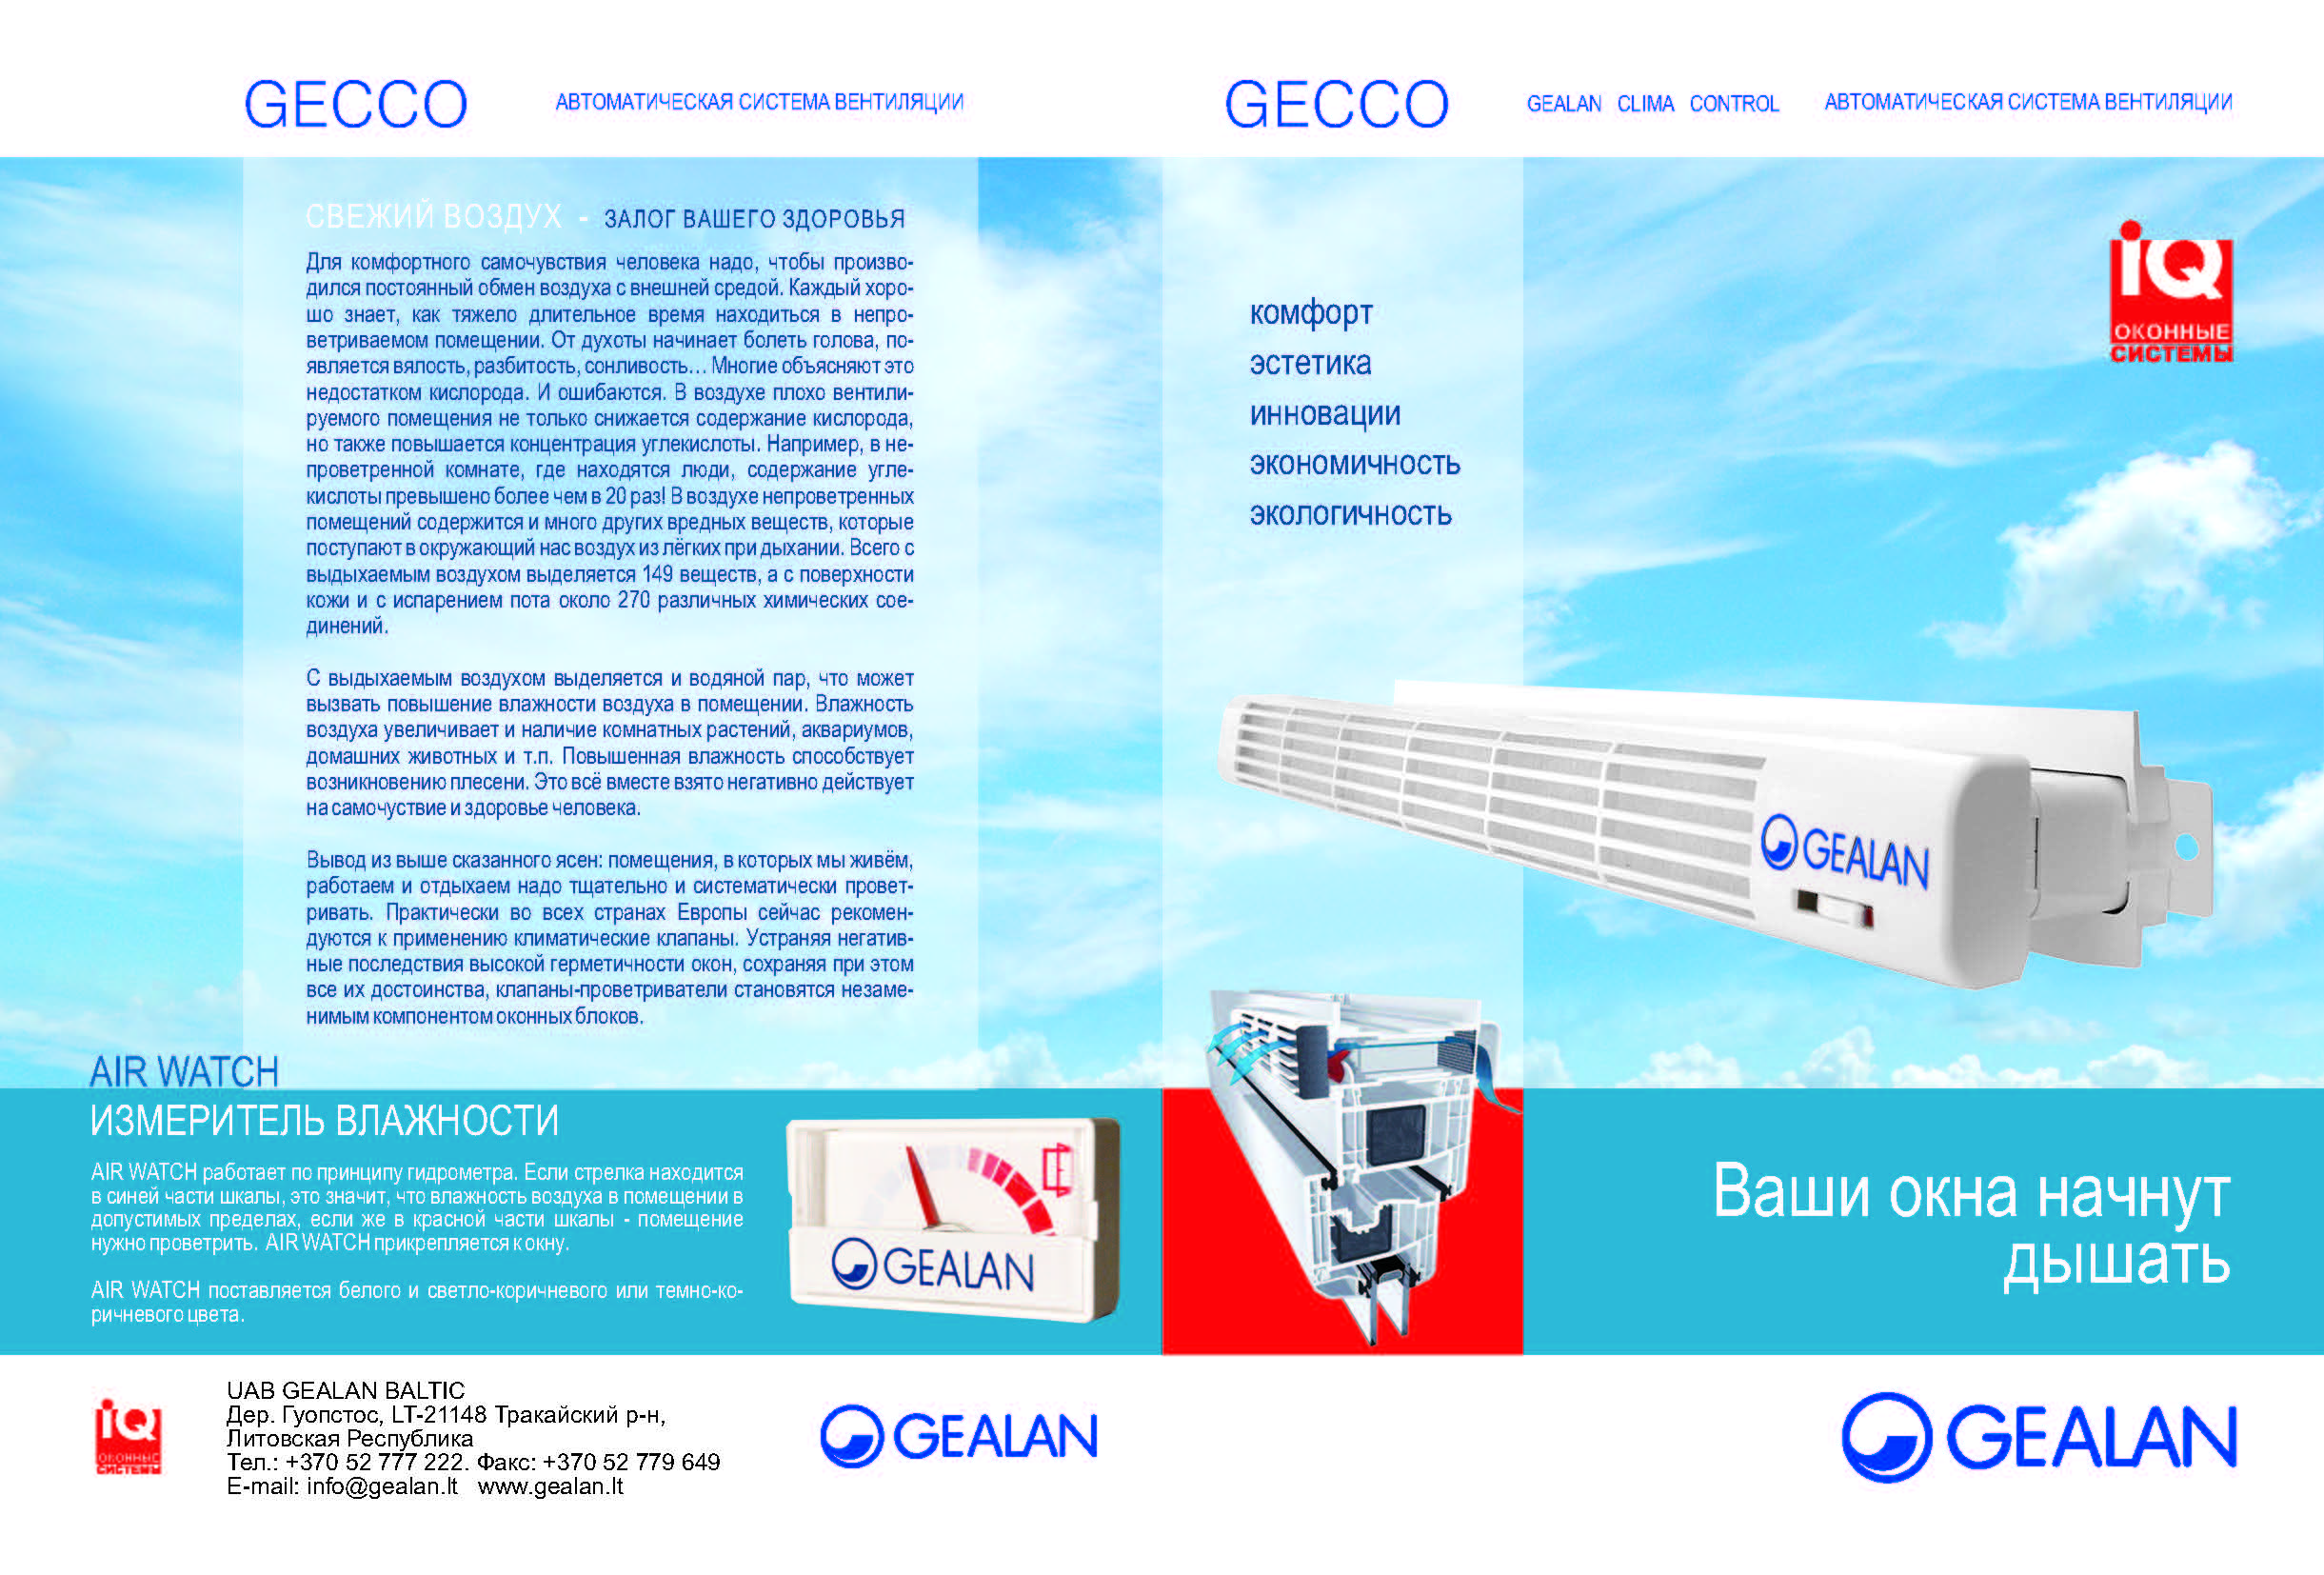 GEALAN -  Автоматическая система вентиляции GECCO